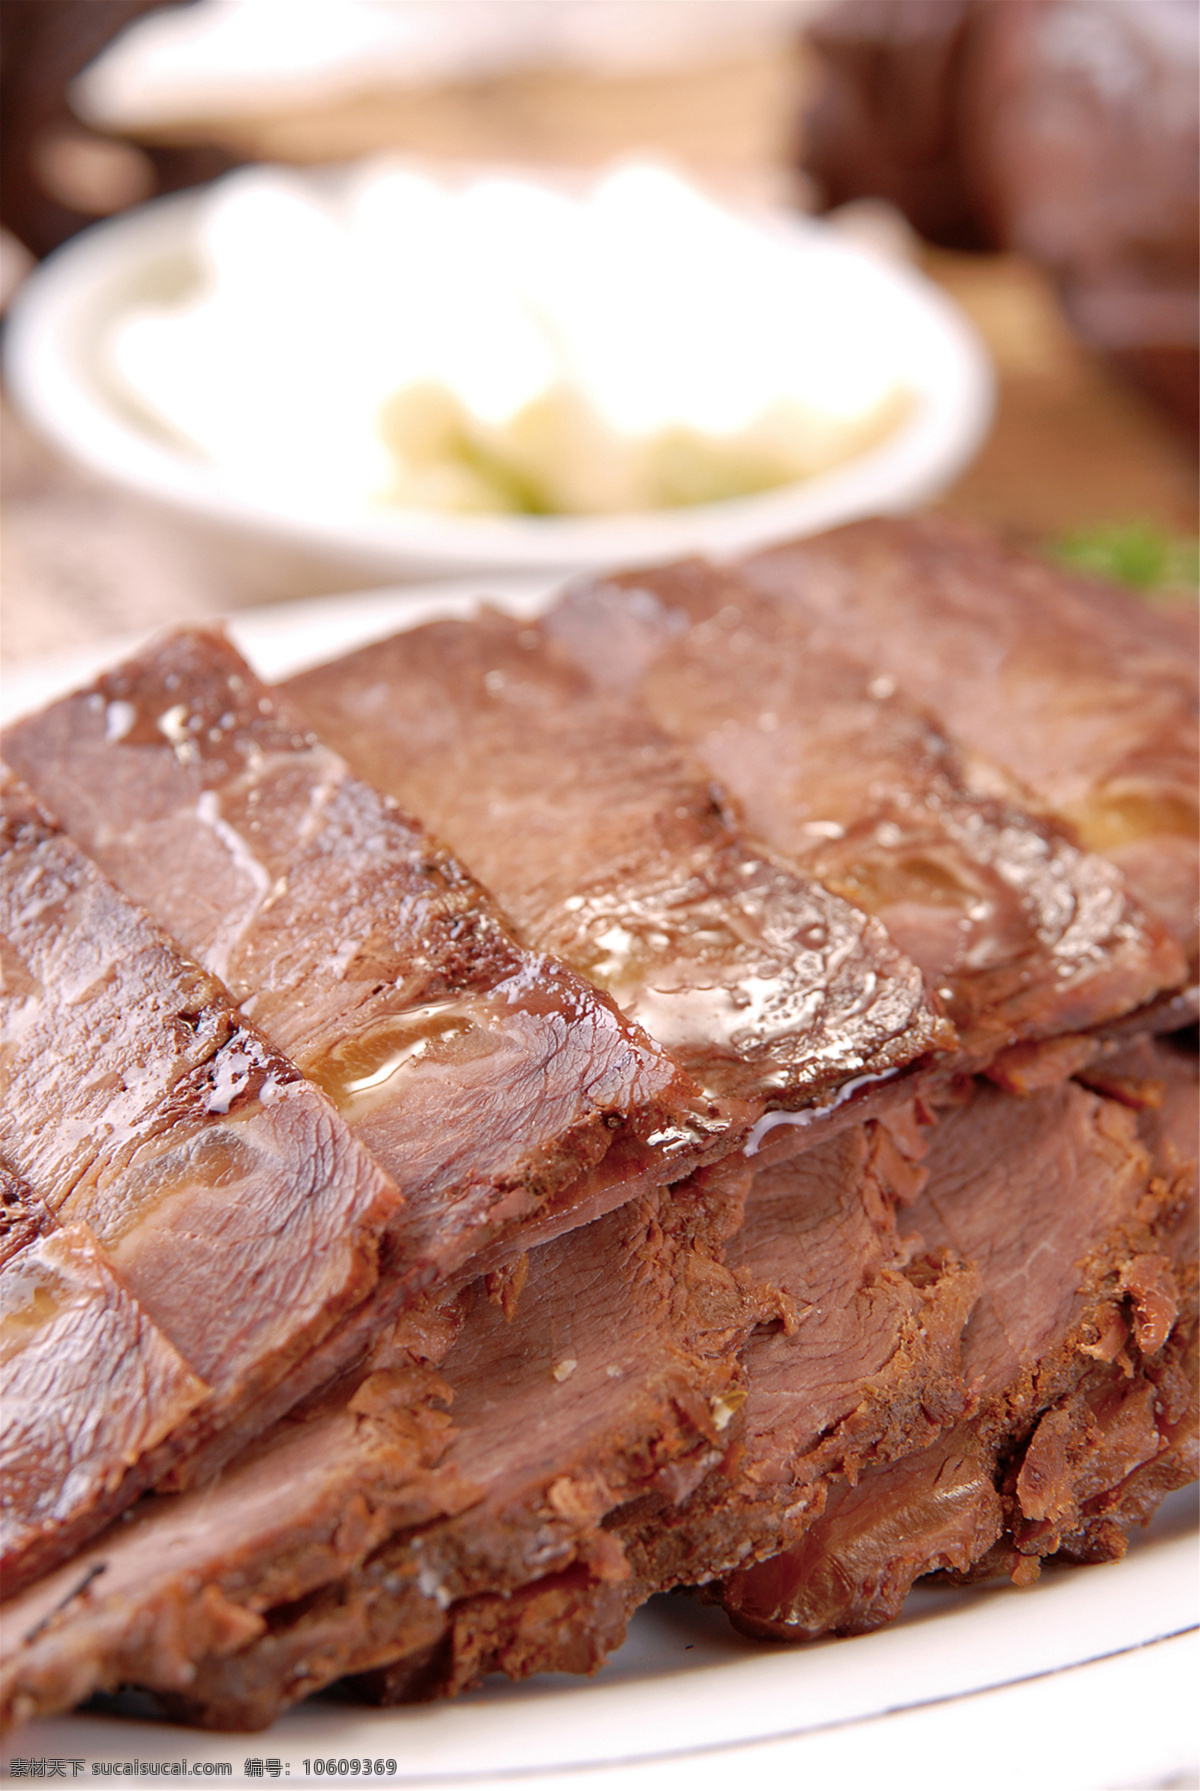 酱牛肉图片 酱牛肉 美食 传统美食 餐饮美食 高清菜谱用图